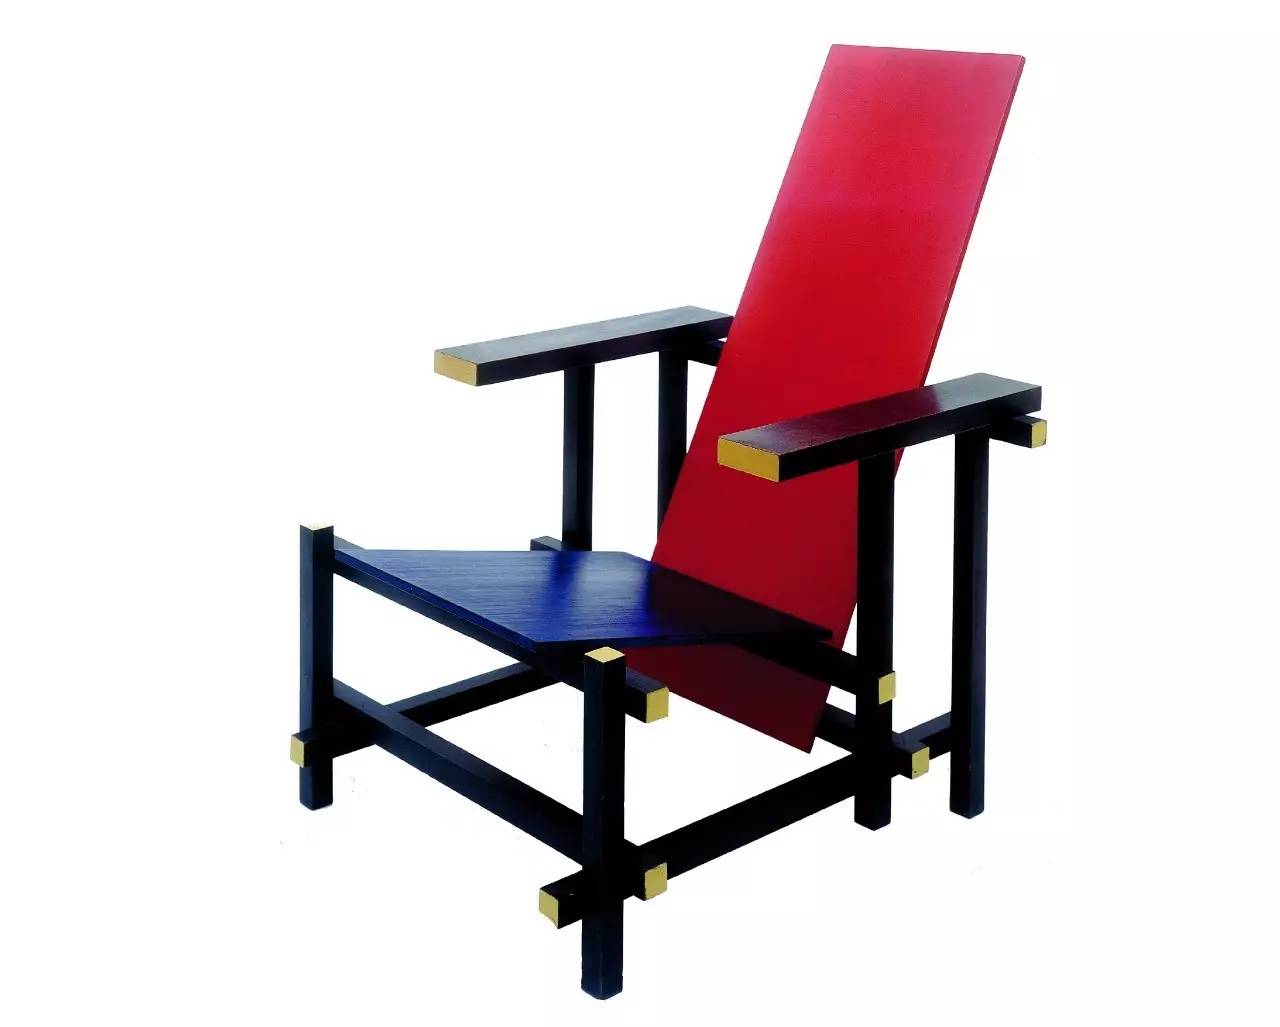 一定要记住这三件作品:蒙德里安的画作《红黄蓝》,里特维尔德的红蓝椅